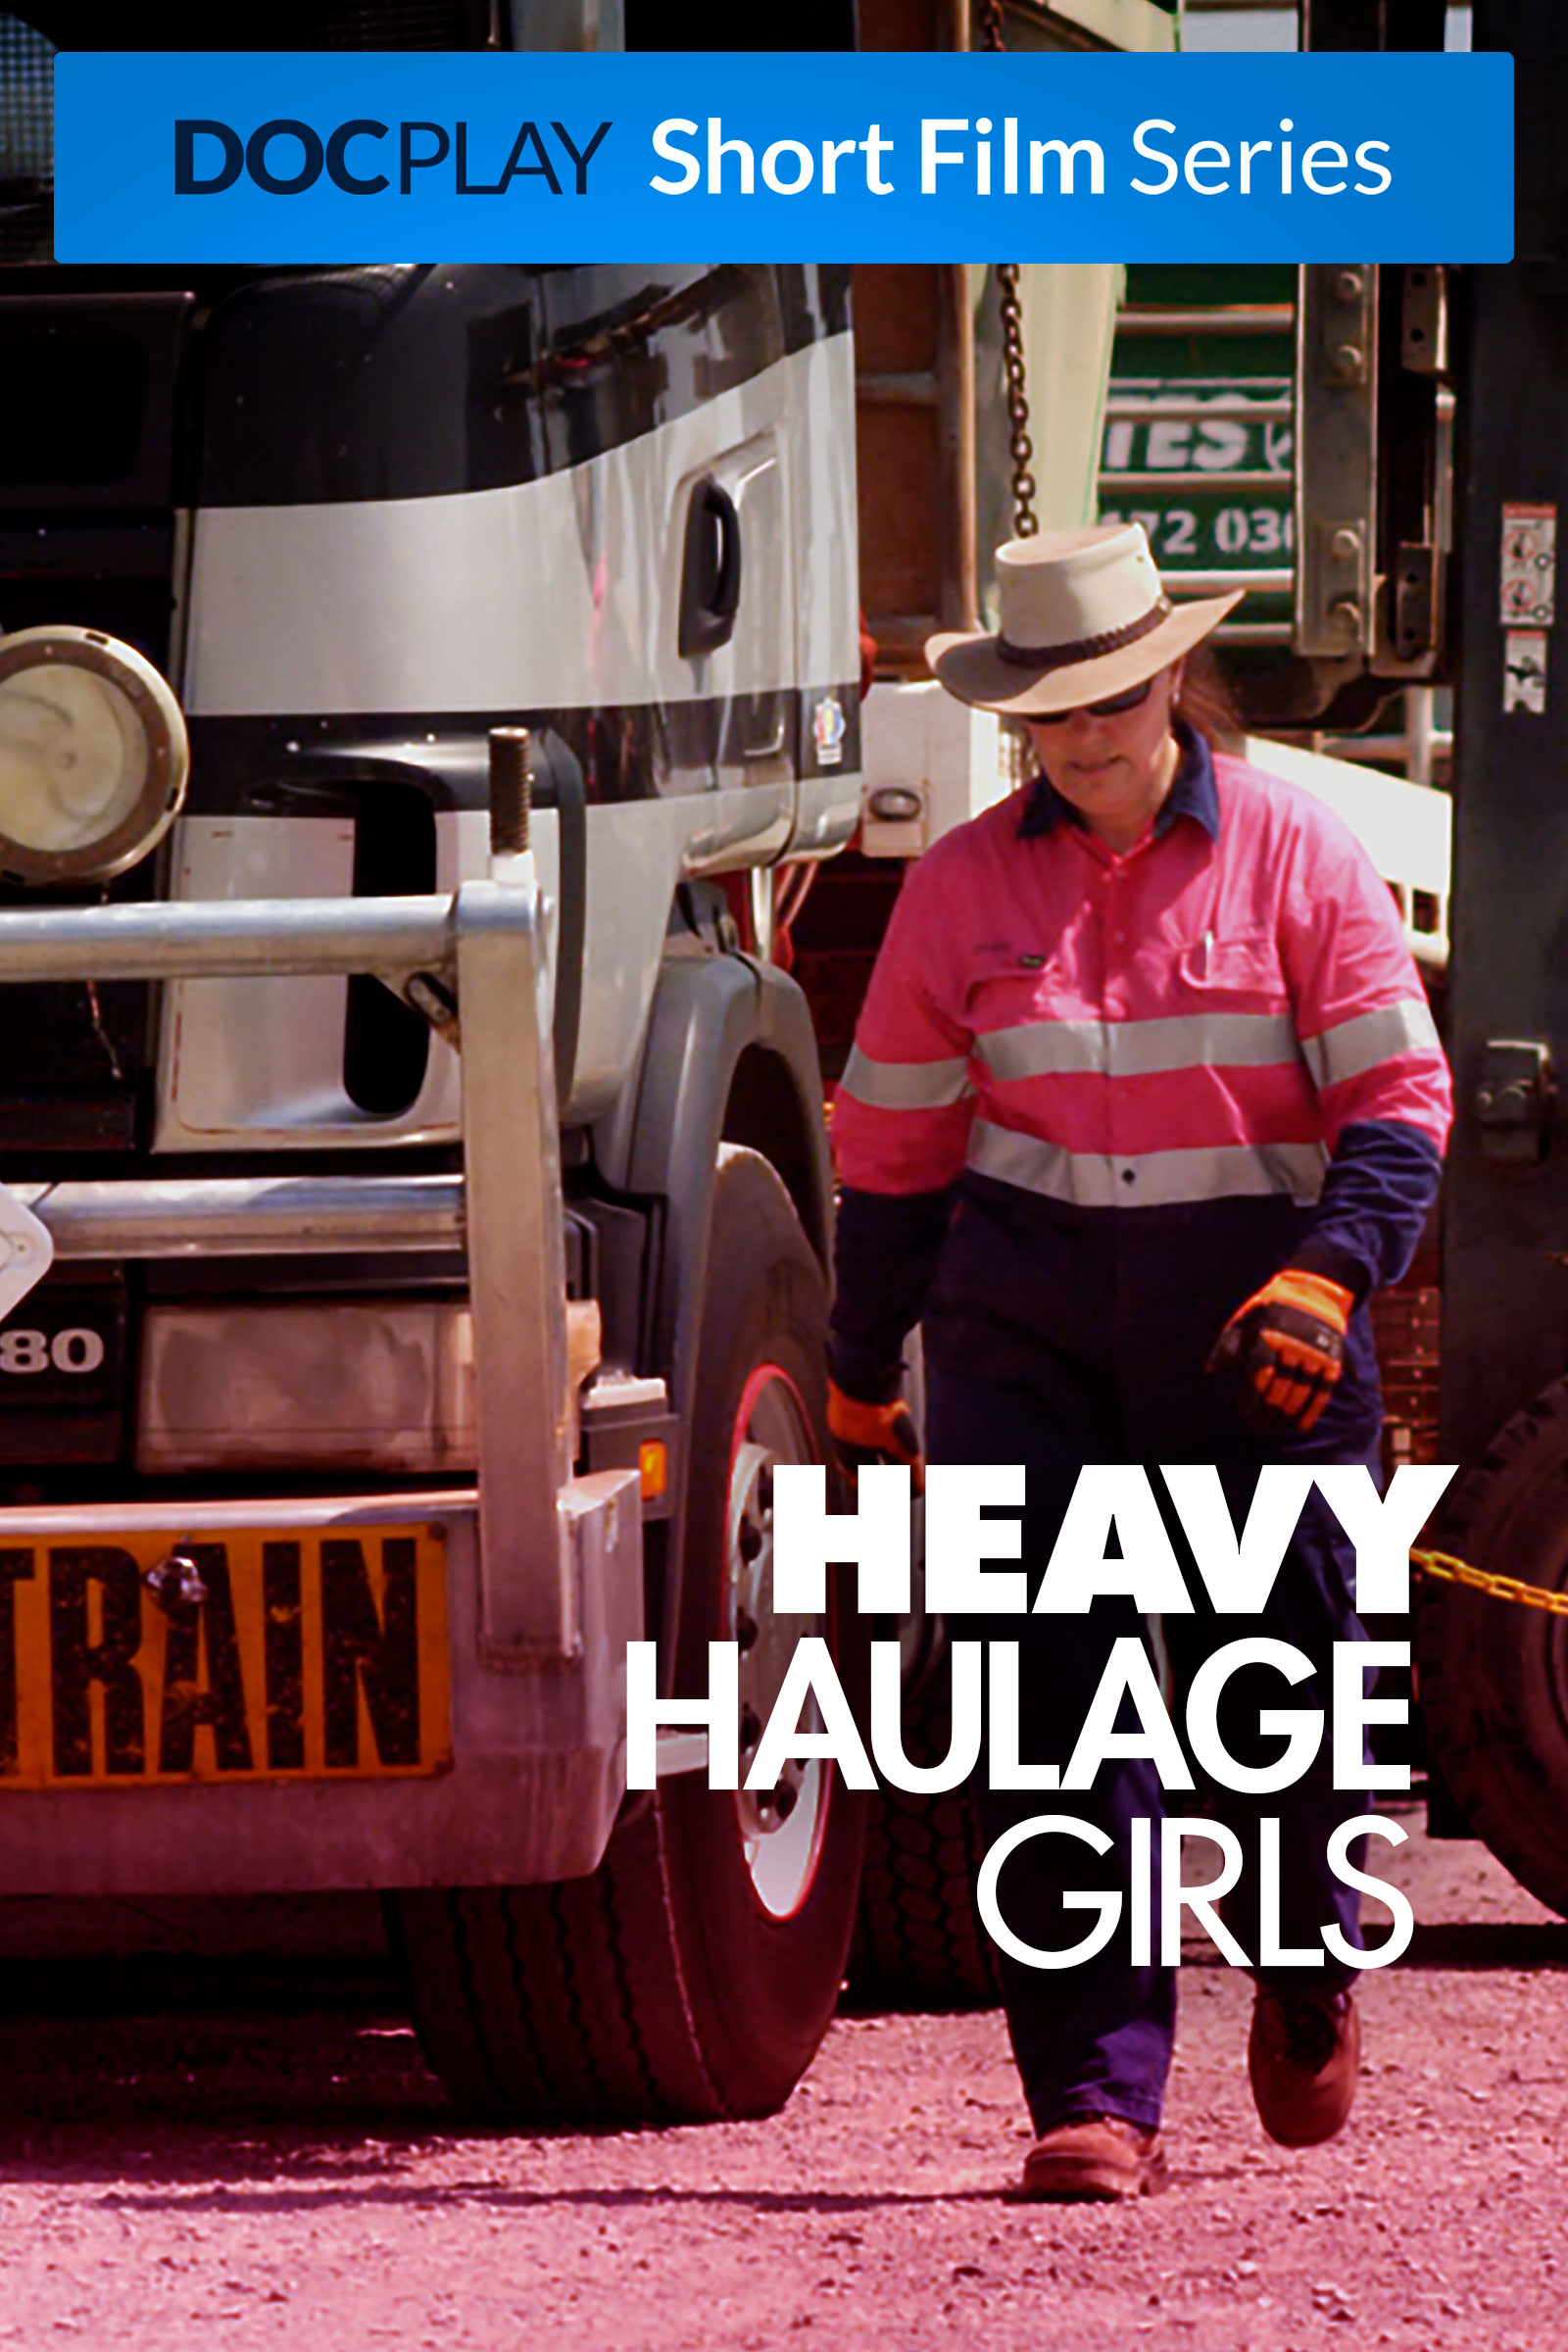 Where to stream Heavy Haulage Girls